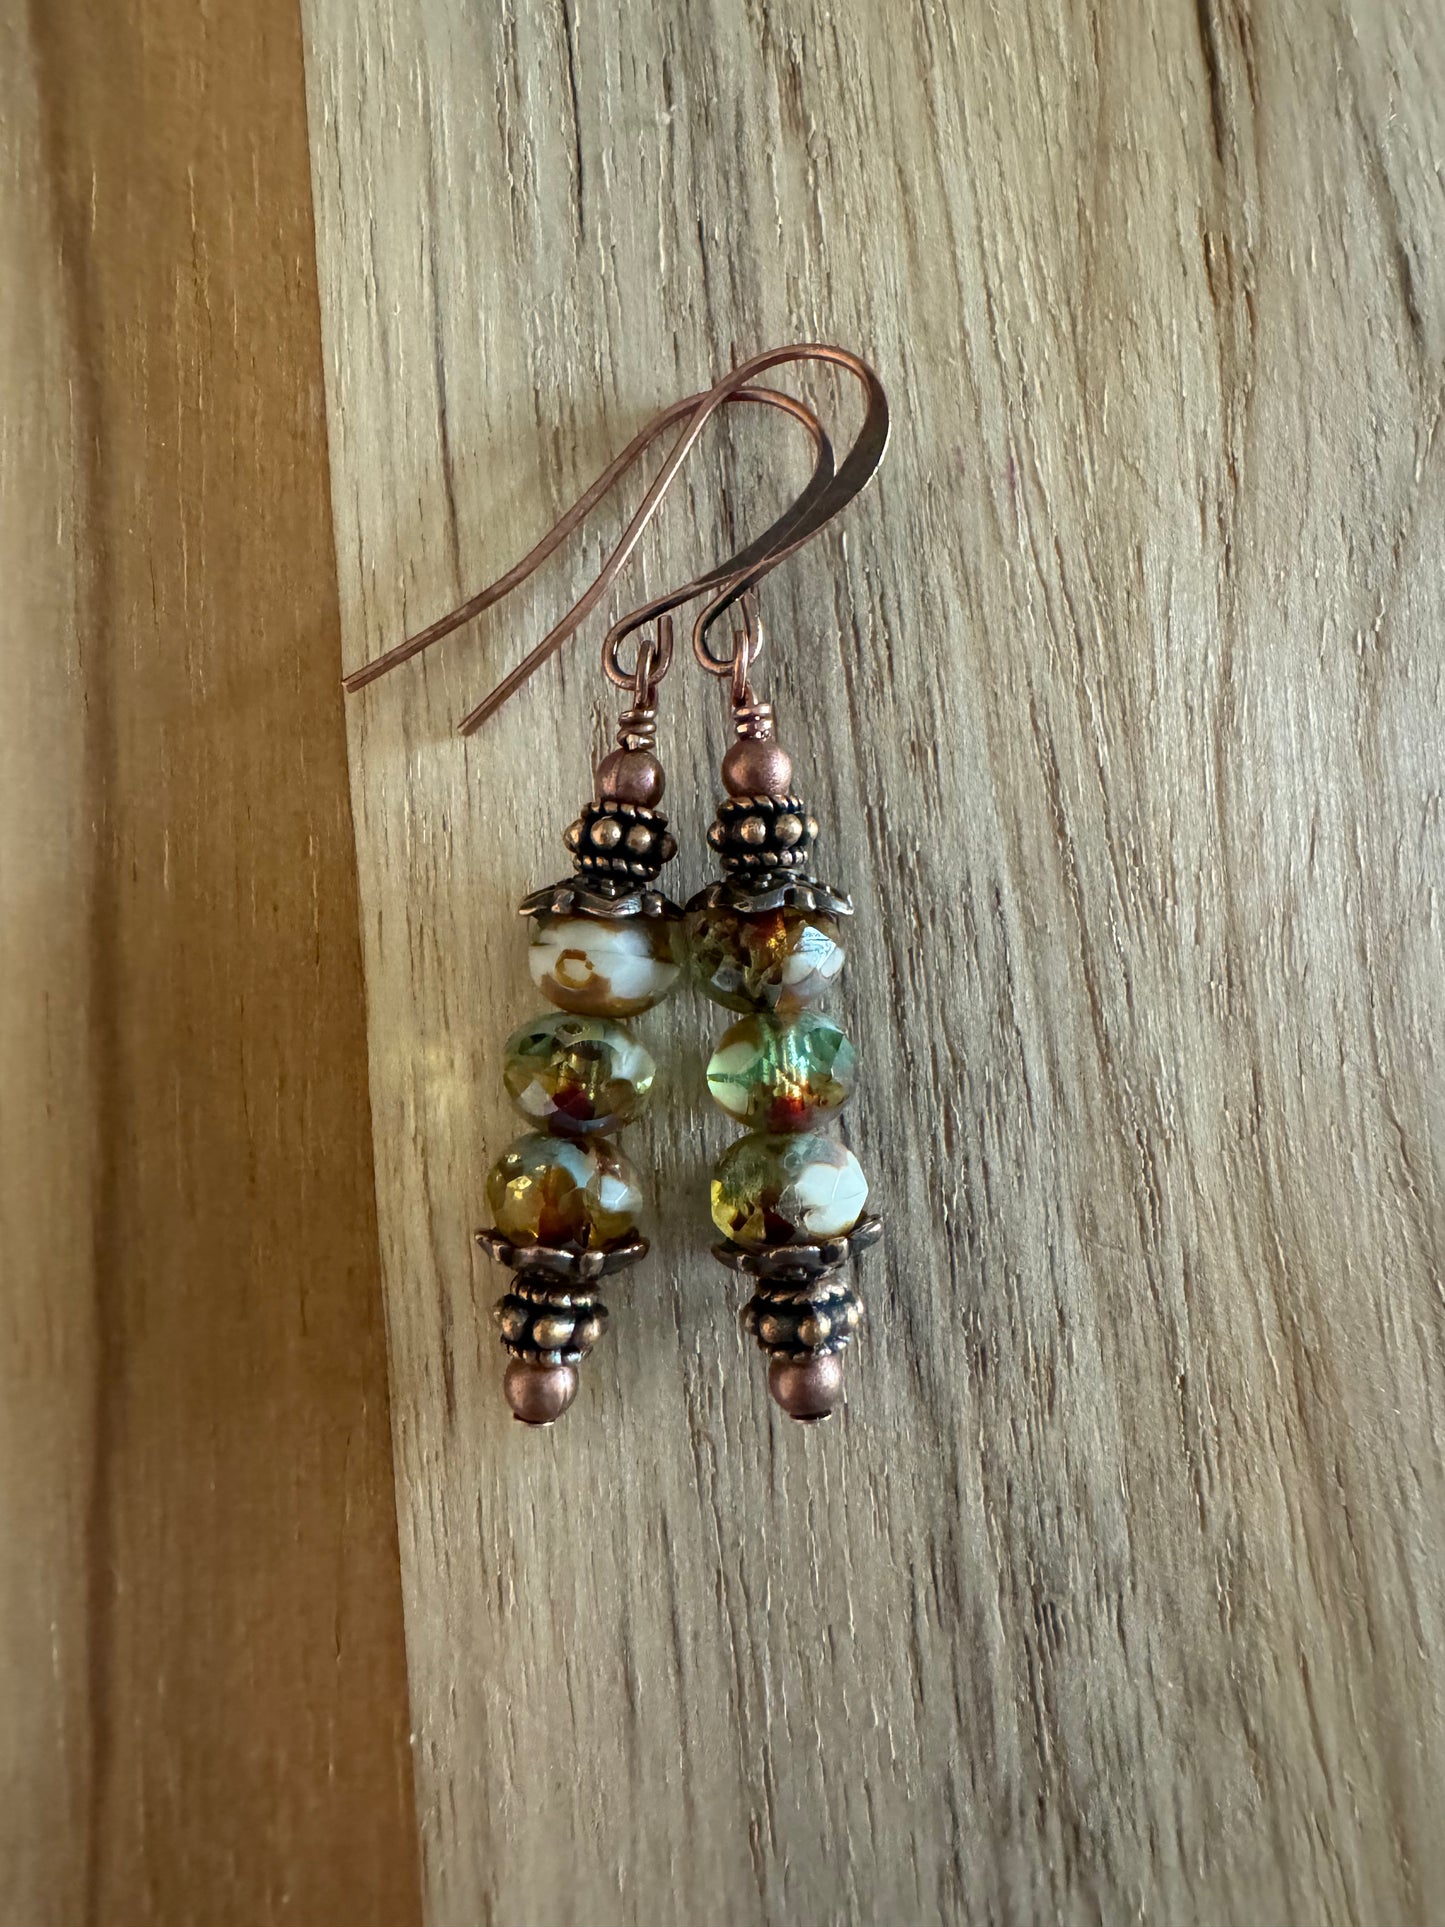 Czech Glass and Copper Dangle Earrings